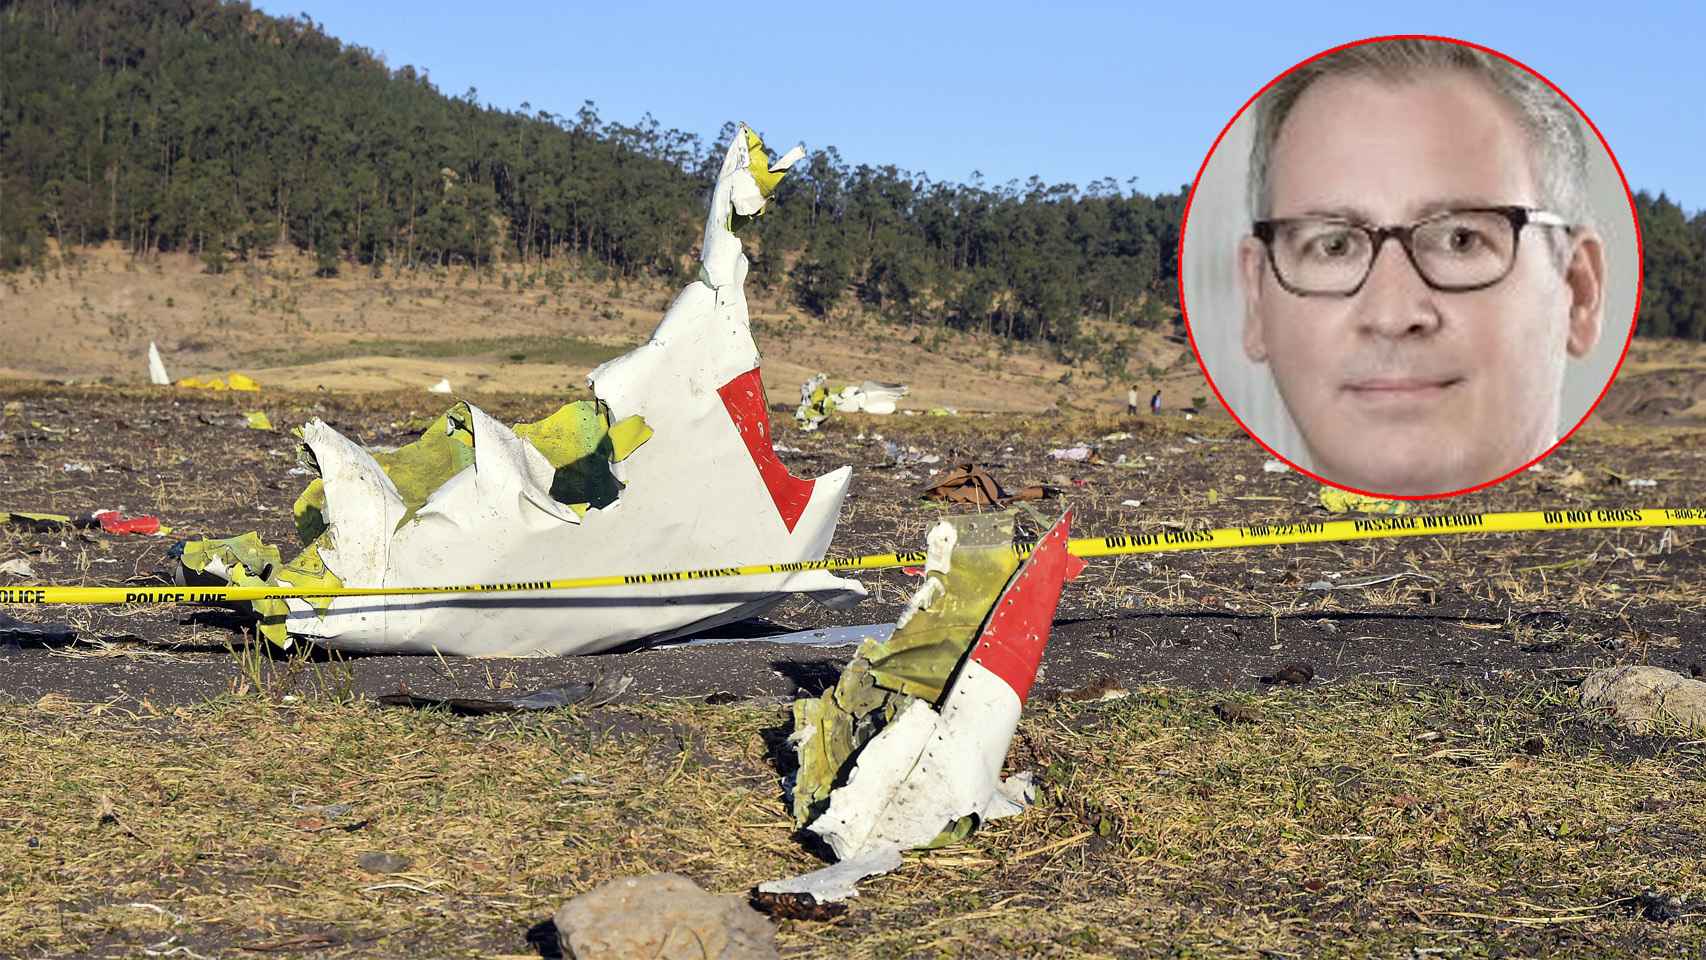 Jordi, el ingeniero catalán que murió en el accidente aéreo en Etiopía.